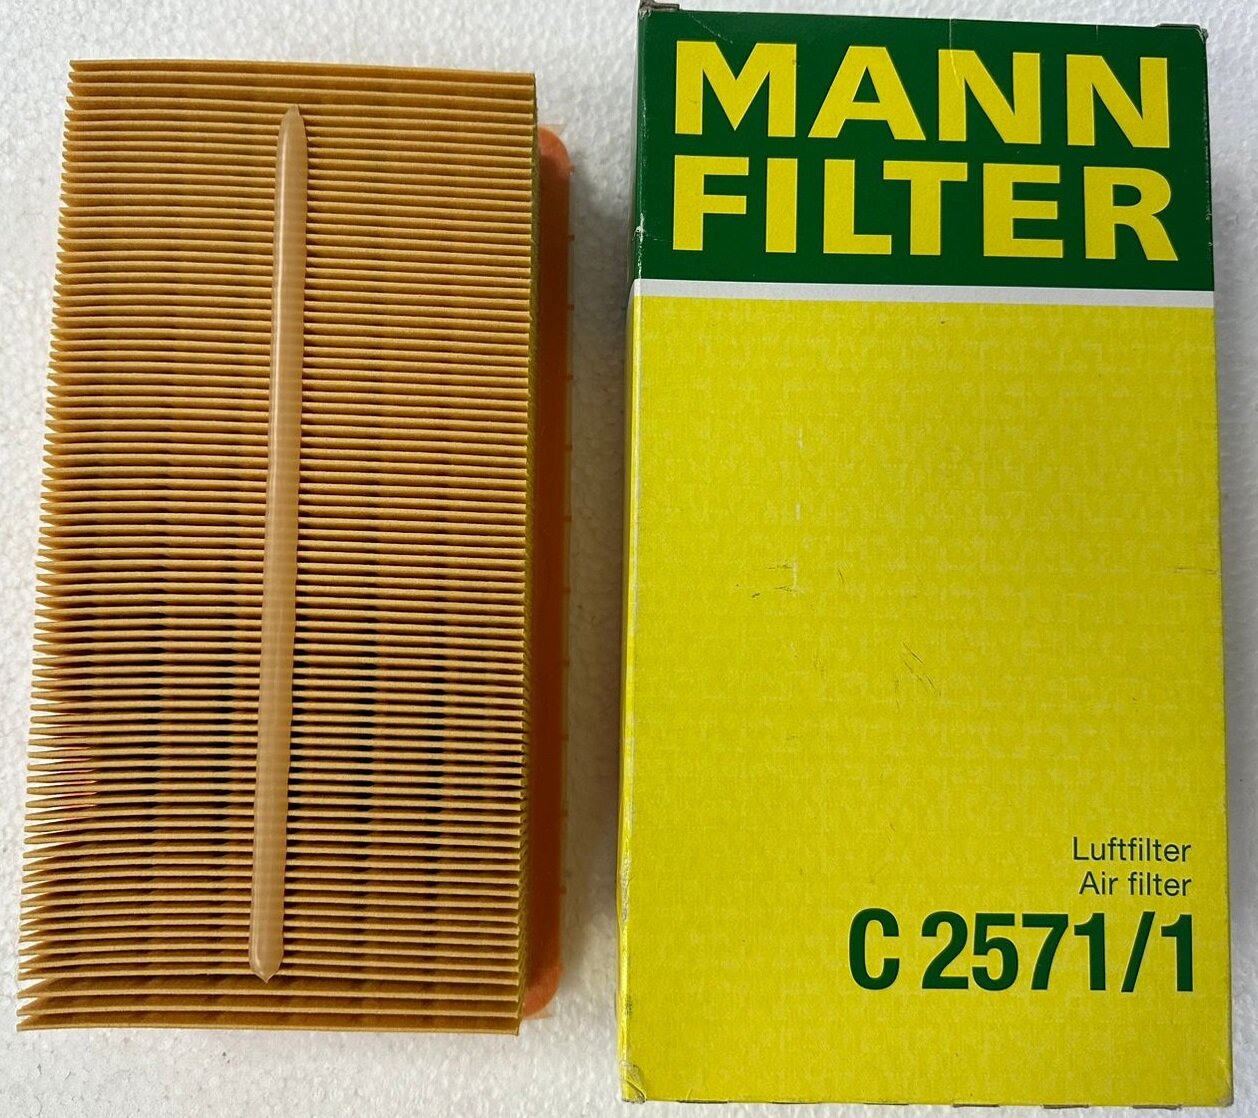 Воздушный фильтр Mann-Filter - фото №7